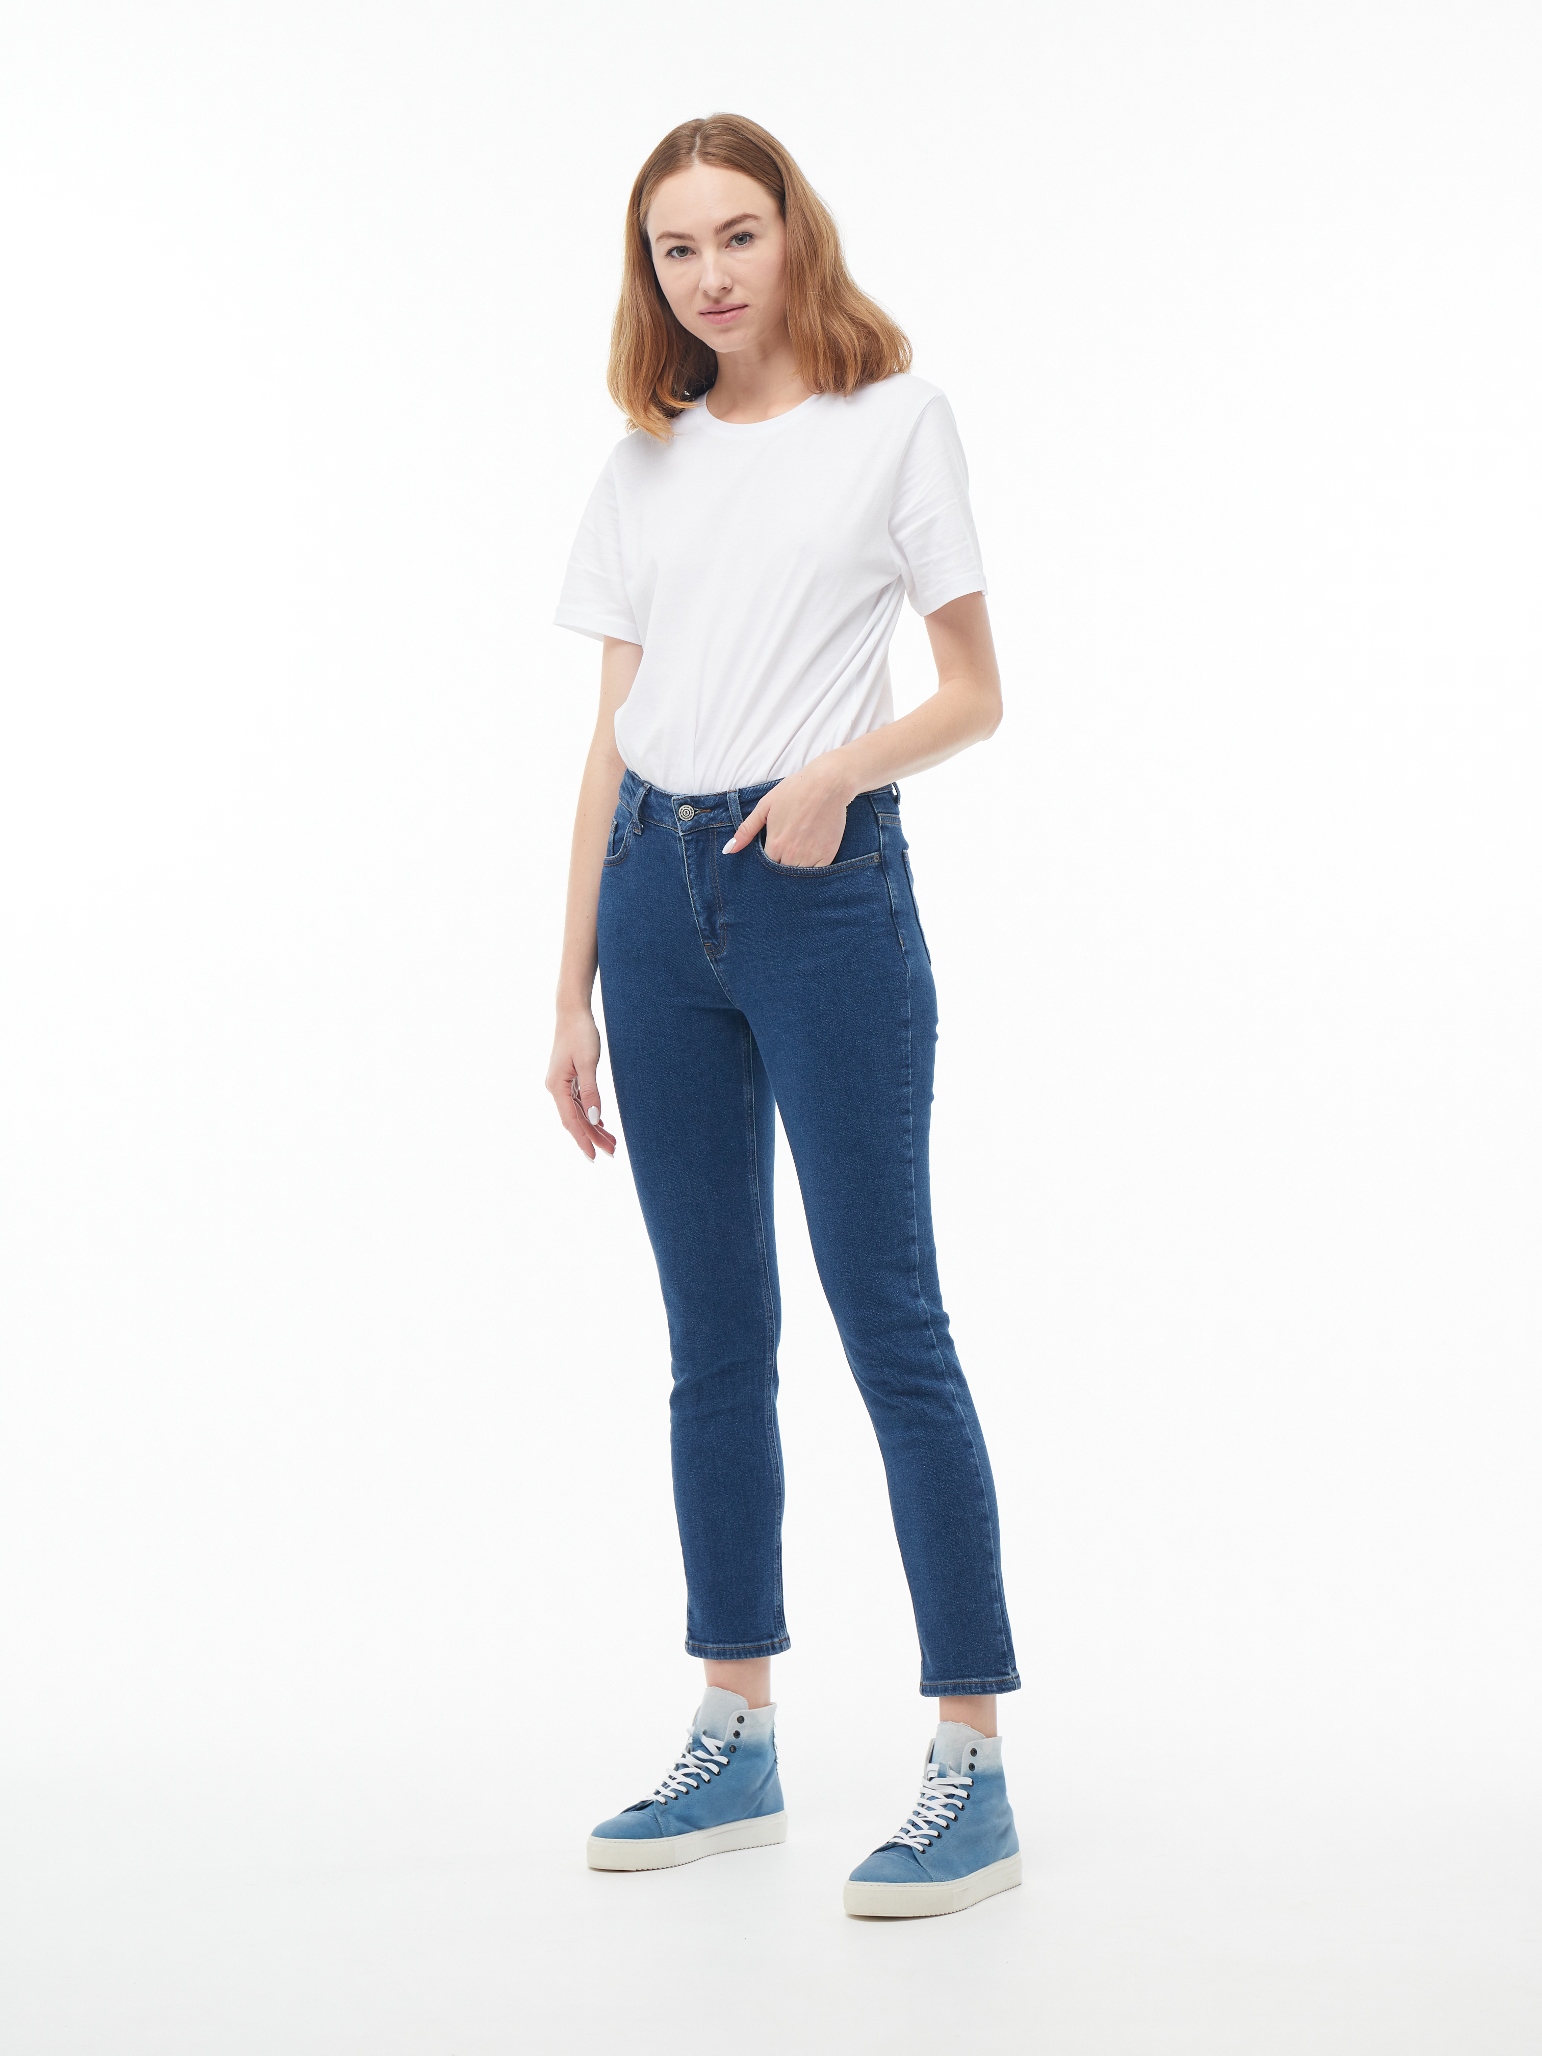 Жіночі джинси Mom Slim Fit  ASA 1080 | Women's Jeans Mom Slim Fit  ASA 1080